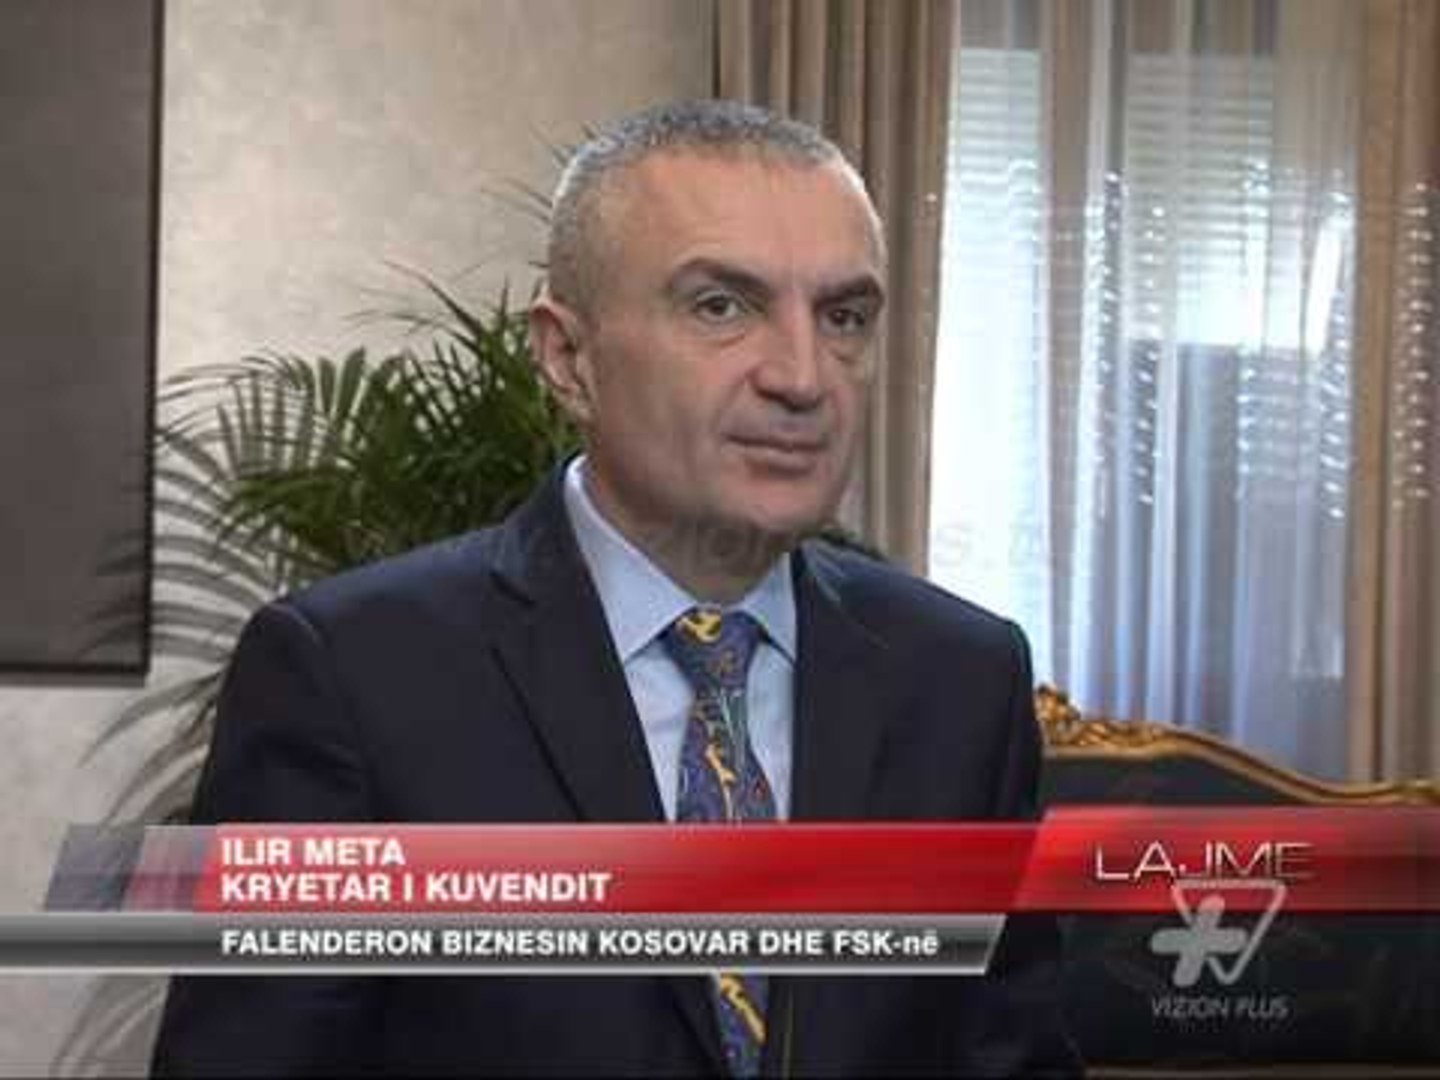 ⁣Meta falenderon biznesin kosovar dhe FSK-në - News, Lajme - Vizion Plus